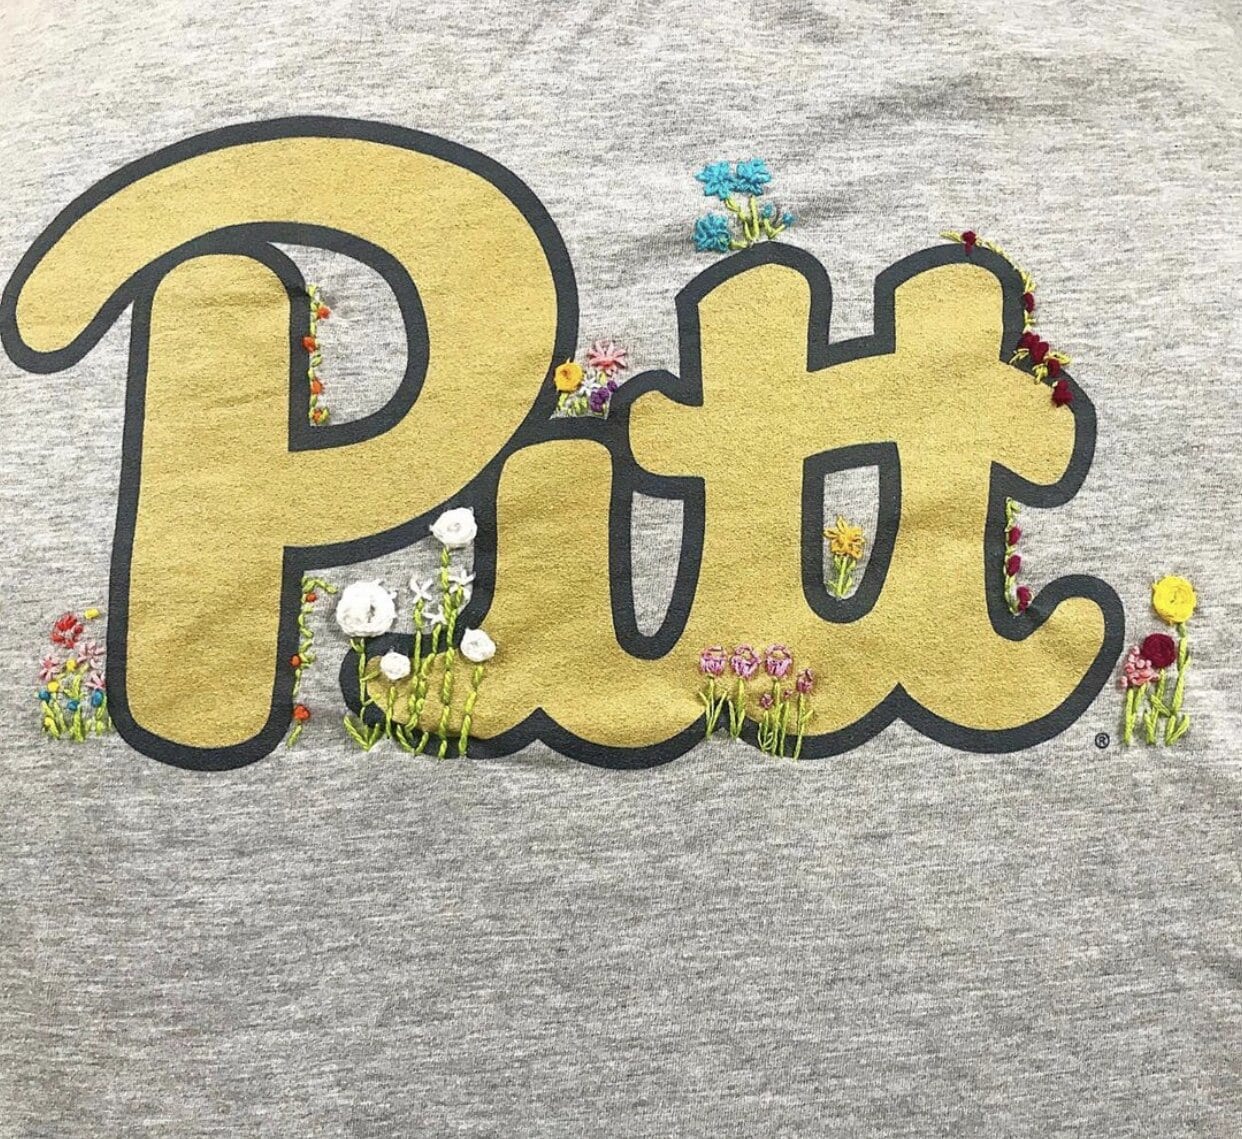 Pitt sweatshirt